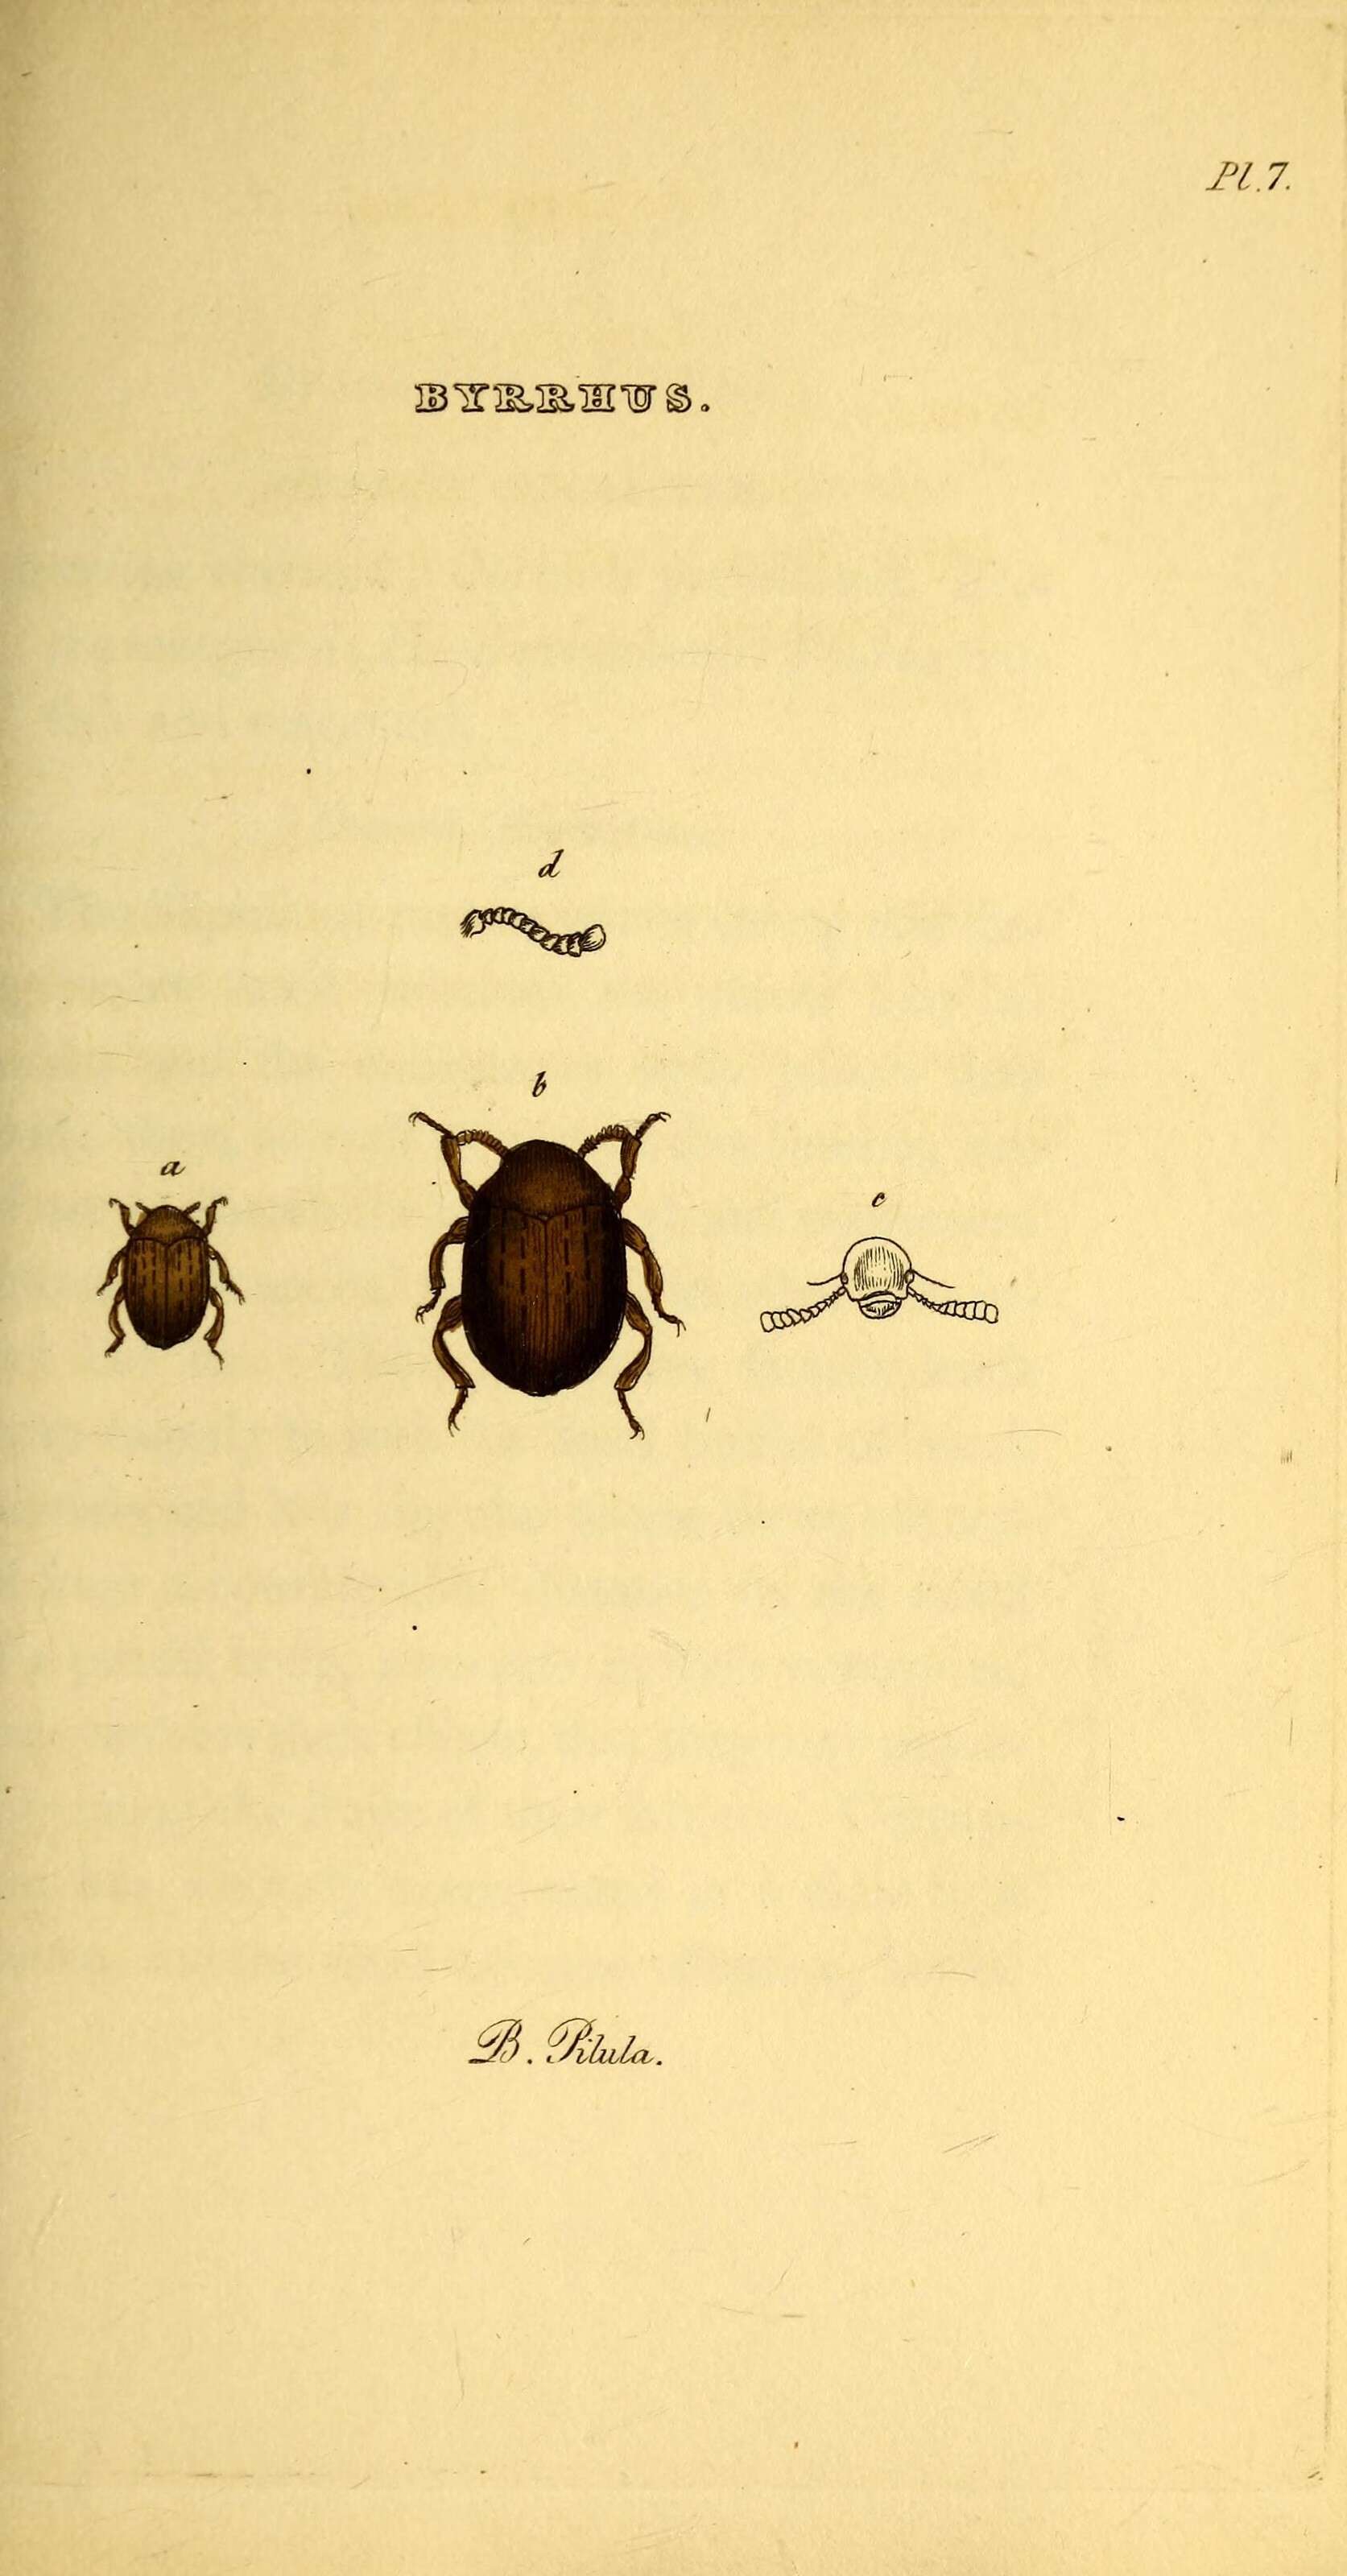 Imagem de Byrrhus pilula Linnaeus 1758